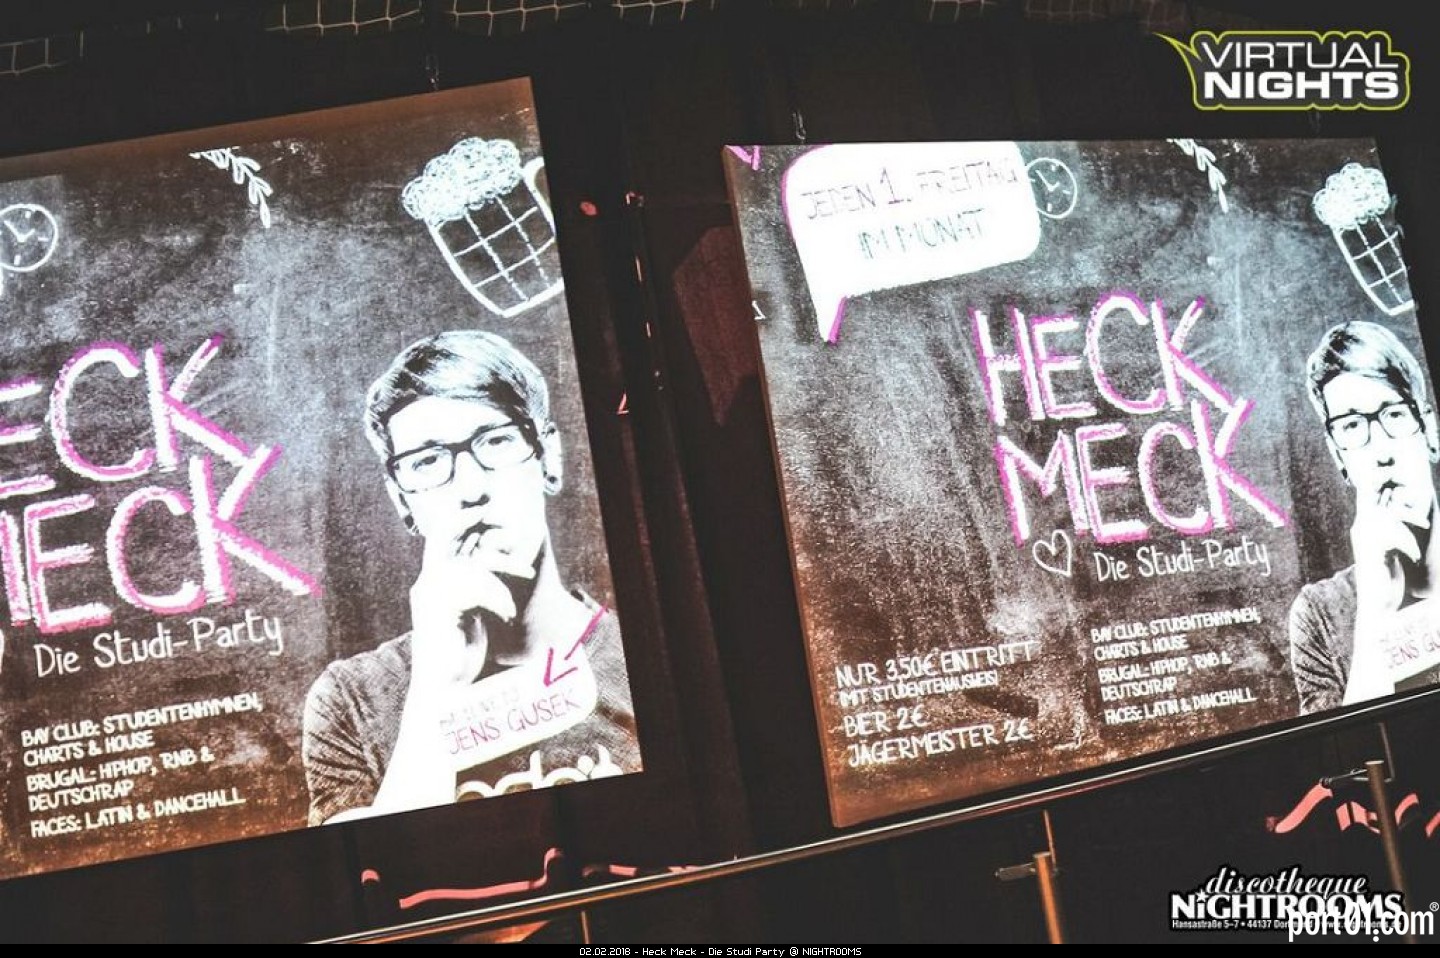 Heck Meck - Die Studi Party @ NIGHTROOMS